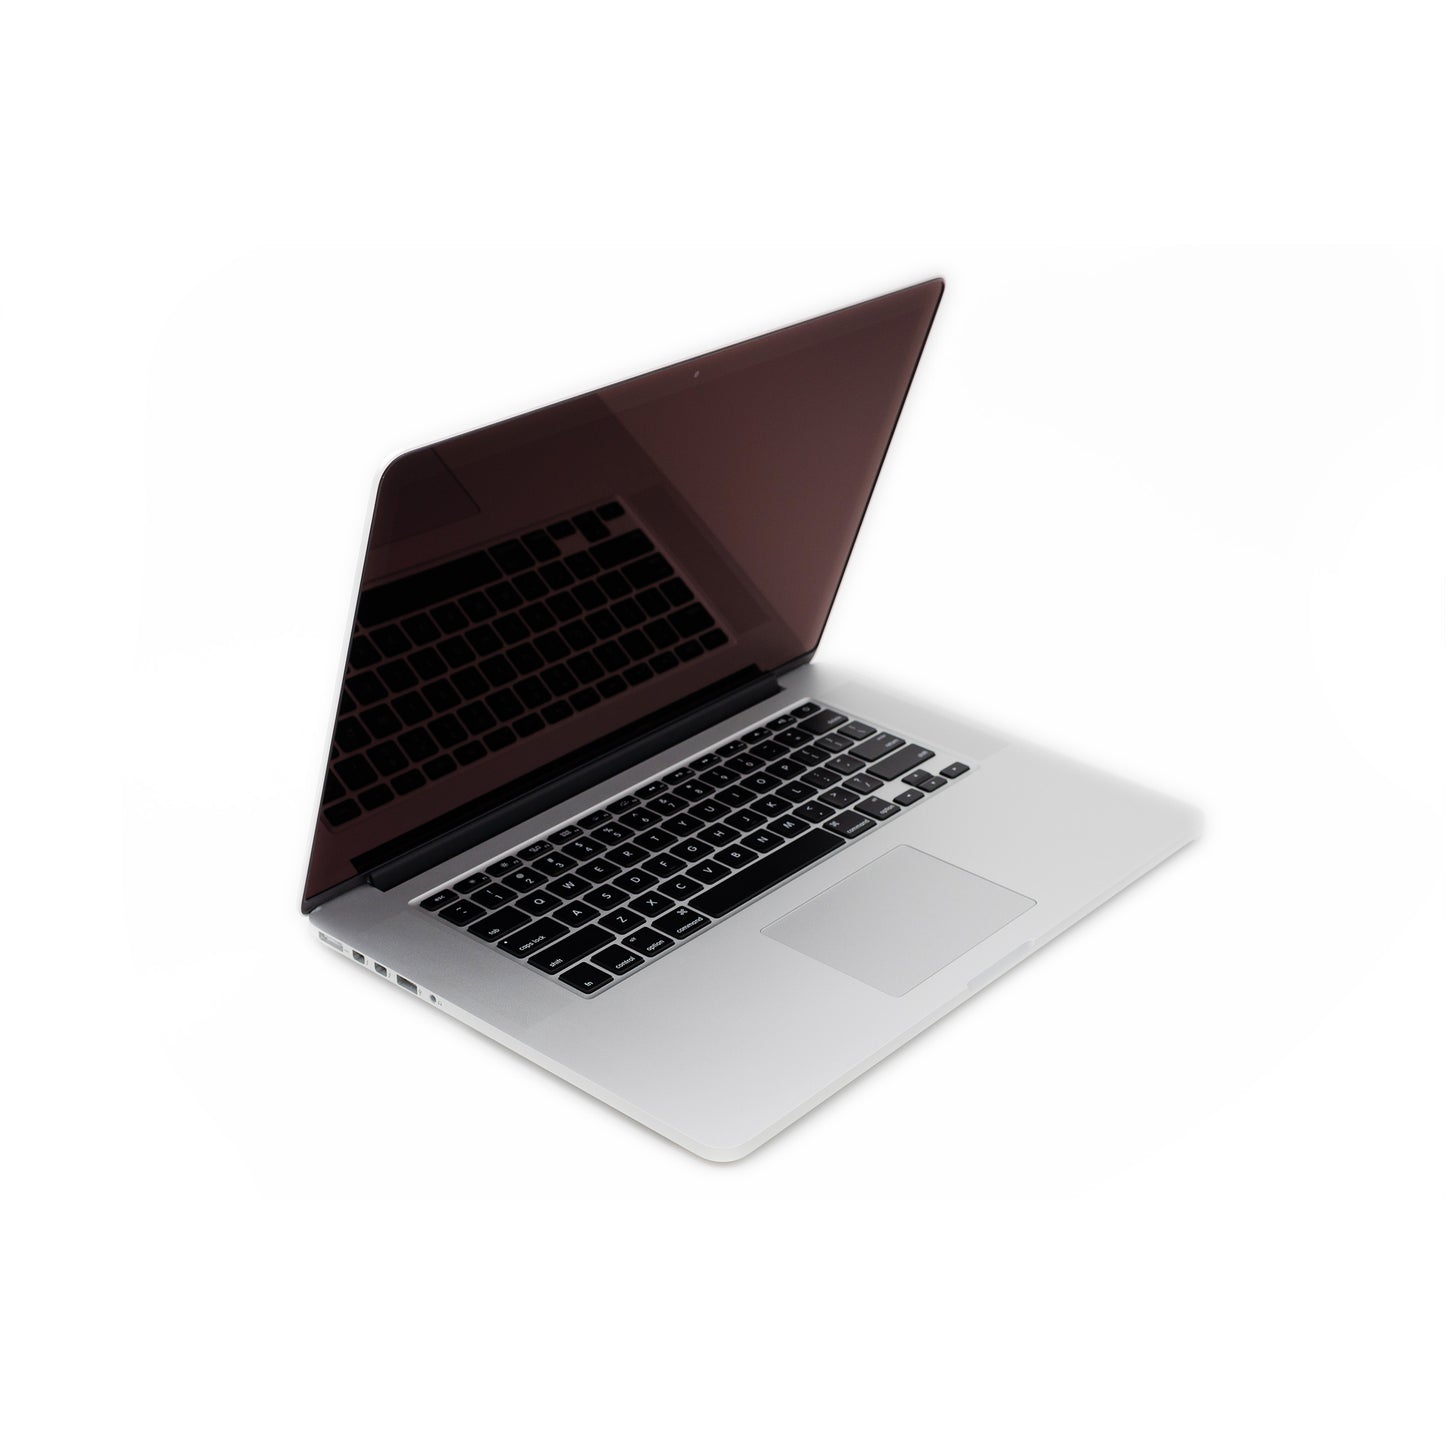 apple-mid-2015-15.4-inch-macbook-pro-retina-a1398-aluminum-qci7 - 2.5ghz processor, 16gb ram, r9 370x - 2gb gpu-mjlt2ll/a-3